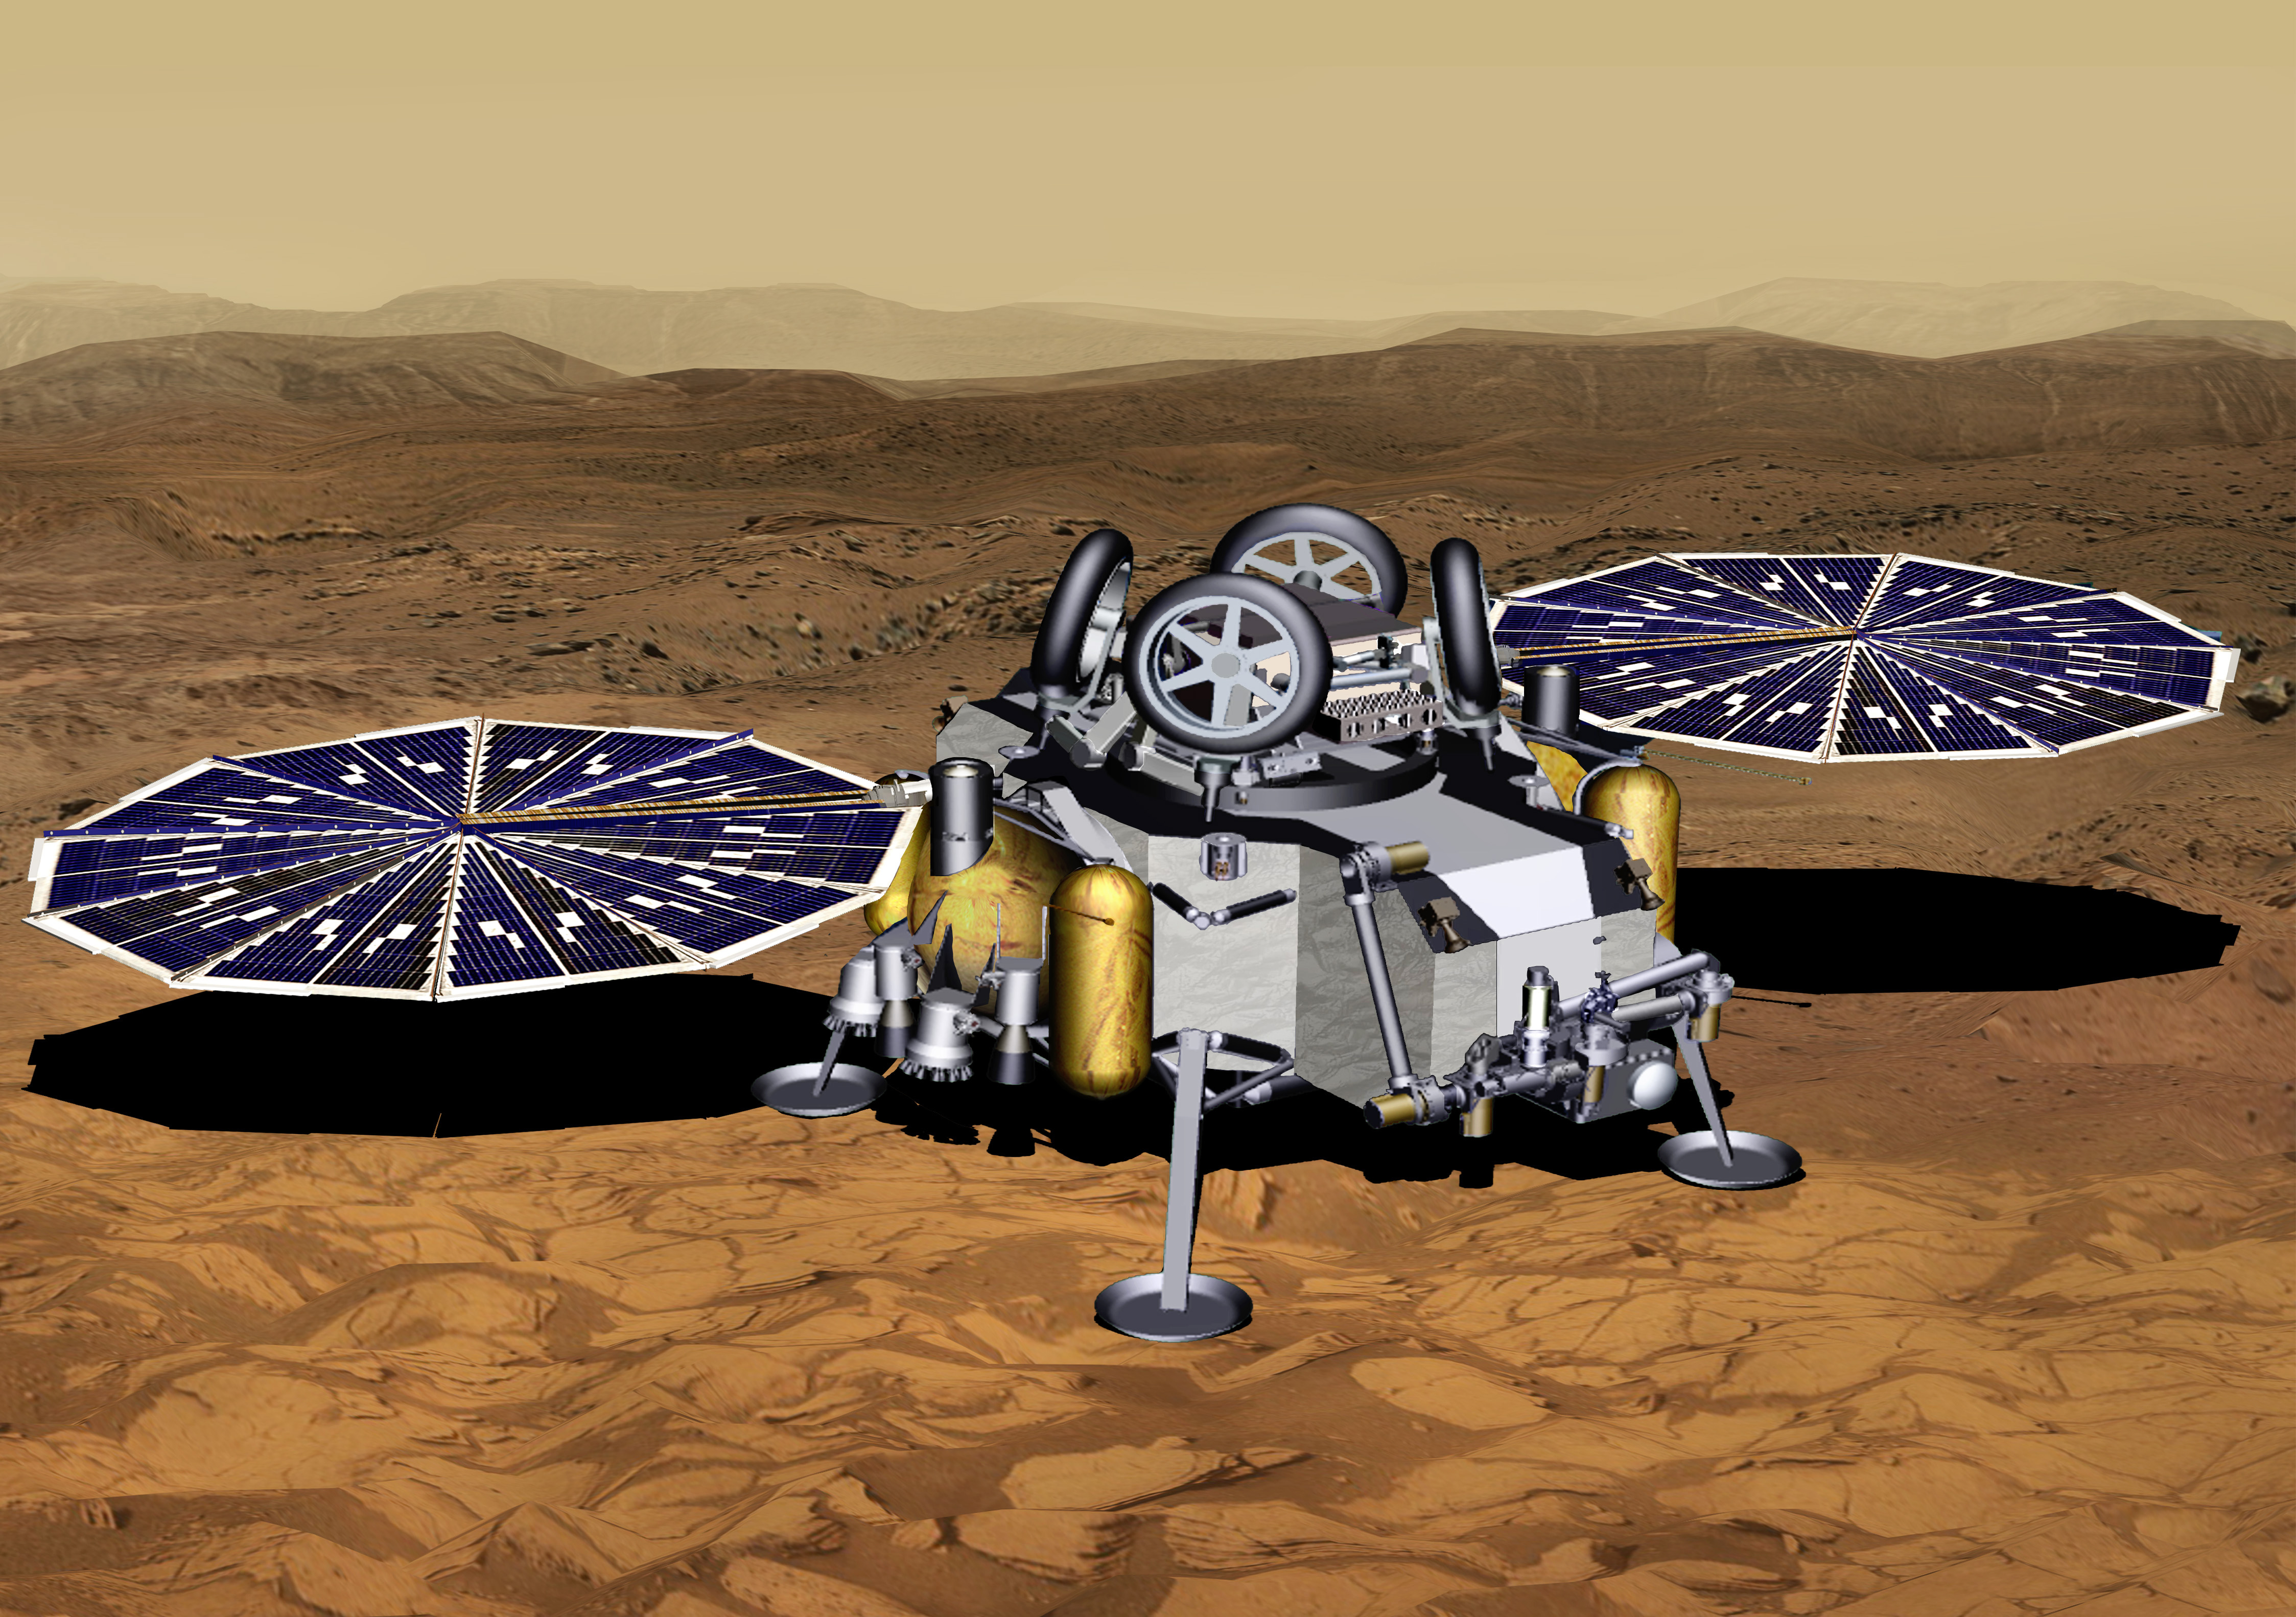 Mars Sample Return Lander With Solar Panels Deployed (Artist's Concept) – NASA's InSight Mars Lander